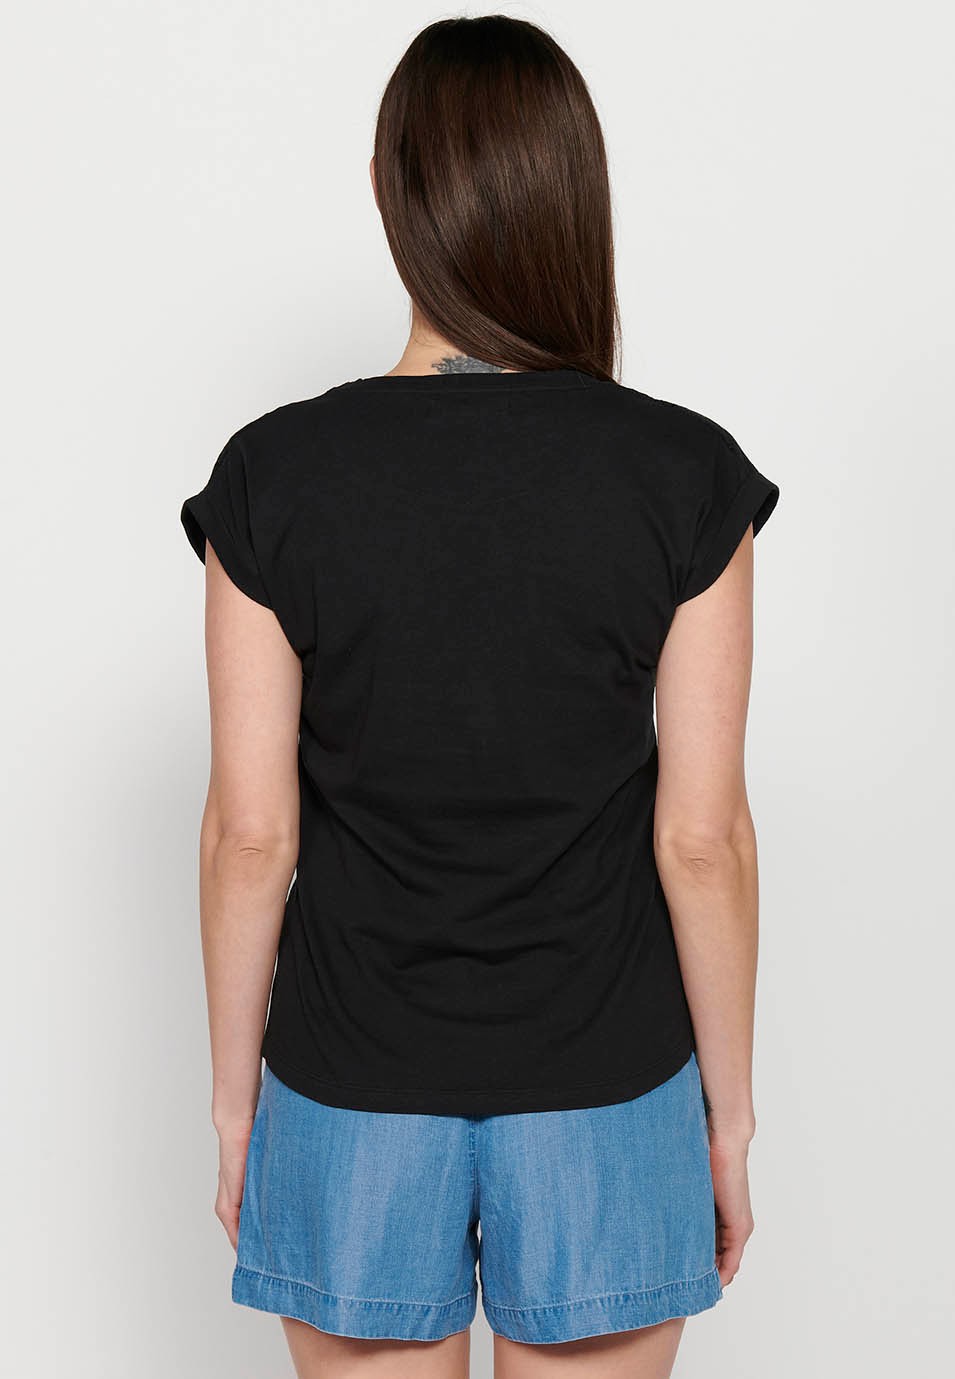 Schwarzes, kurzärmliges Damen-T-Shirt mit rundem Ausschnitt und Stickerei